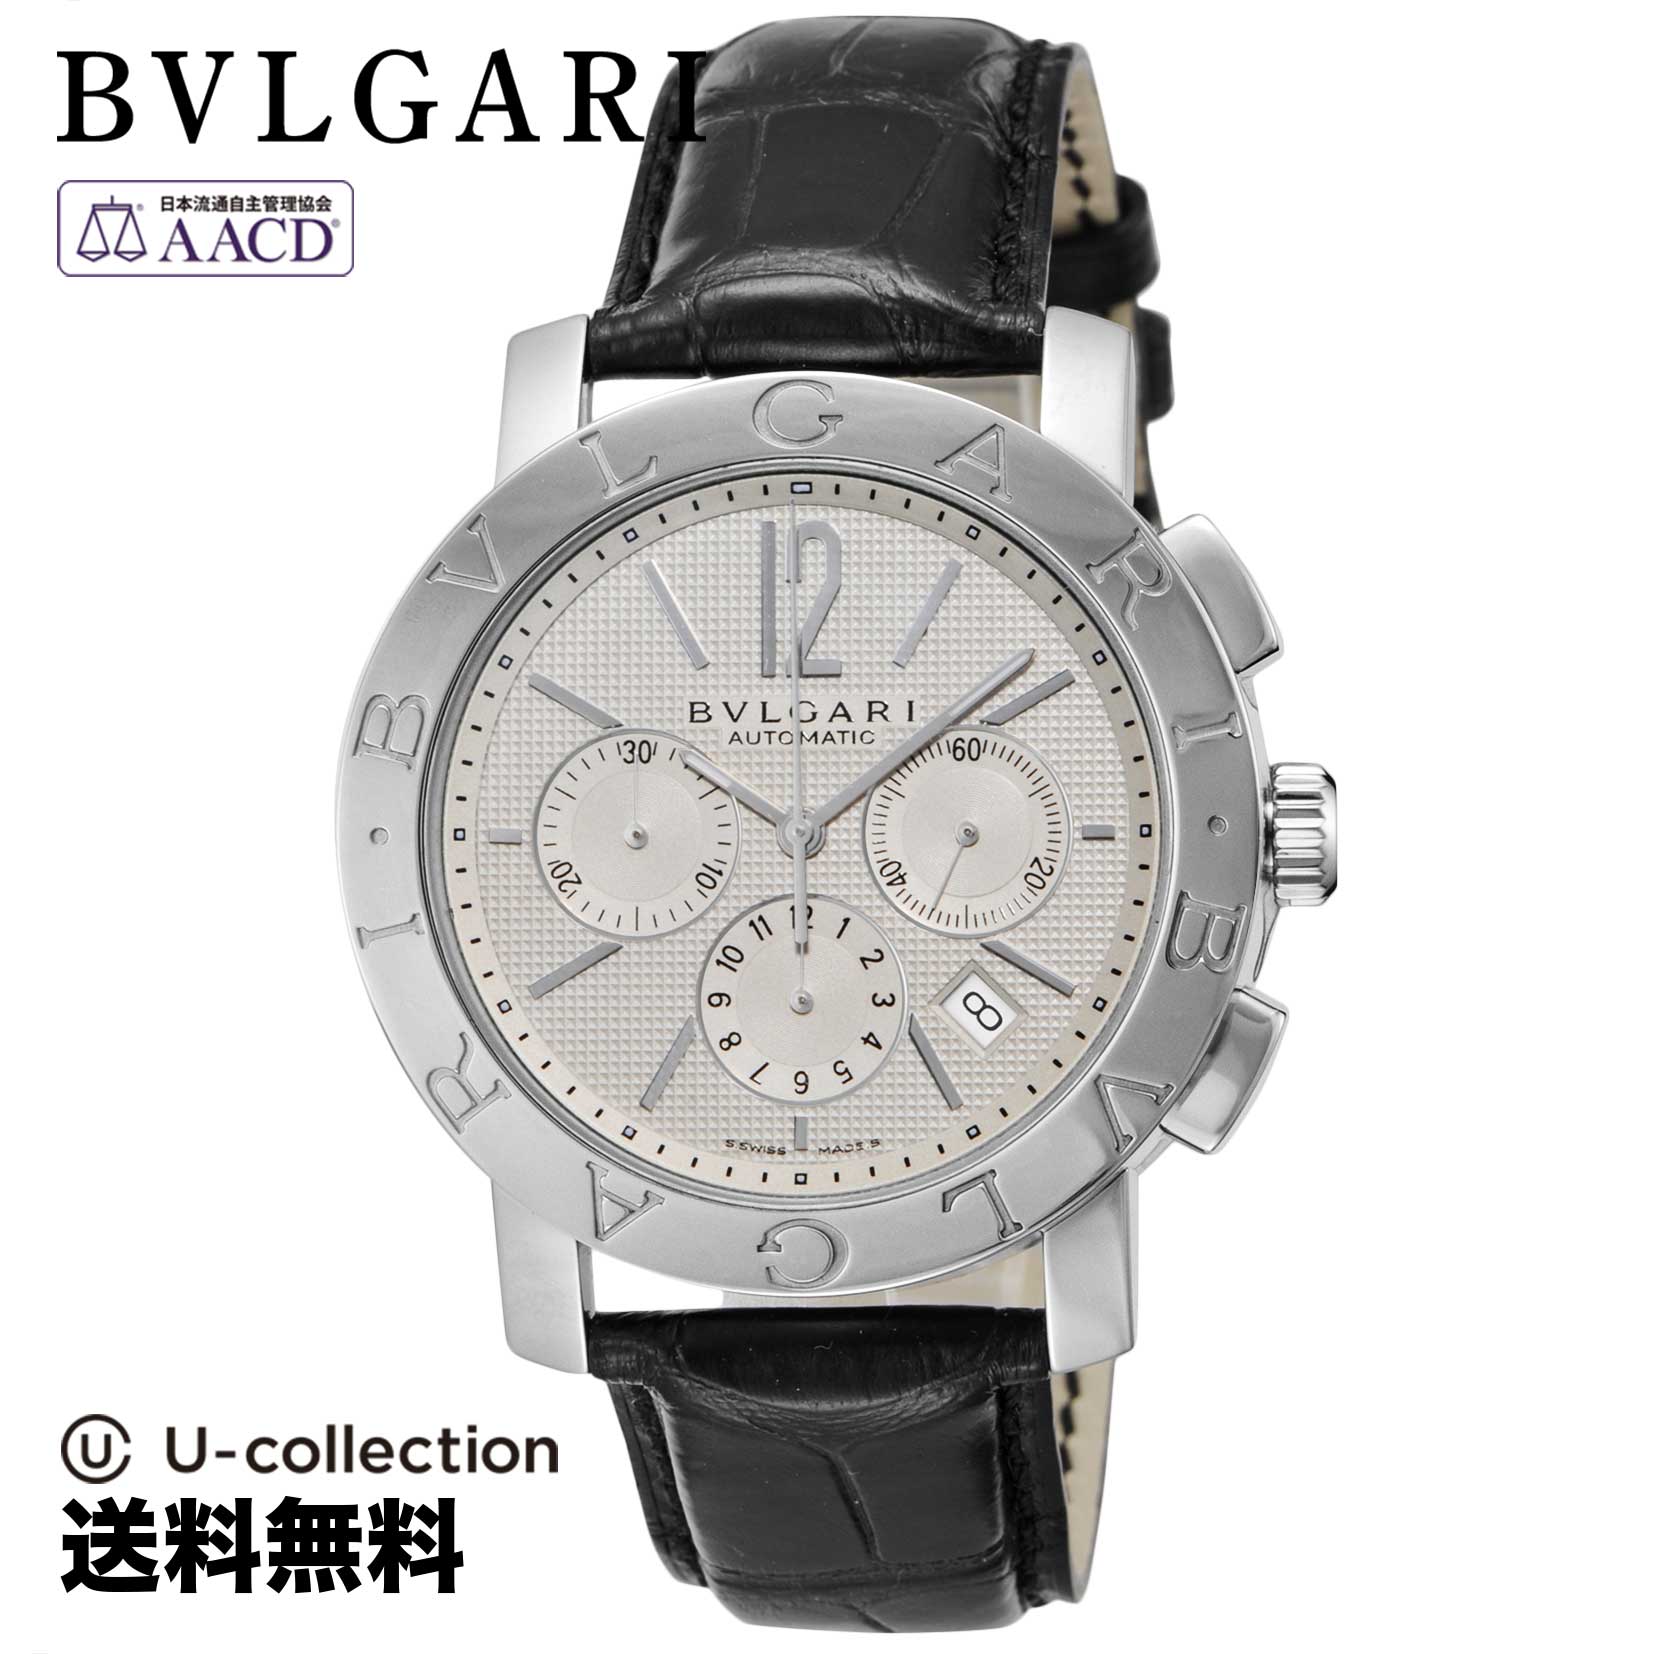 ブルガリ【腕時計】 BVLGARI(ブルガリ) Bvlgari Bvlgari / ブルガリブルガリ メンズ ホワイト 自動巻 BB42WSLDCH 時計 ブランド